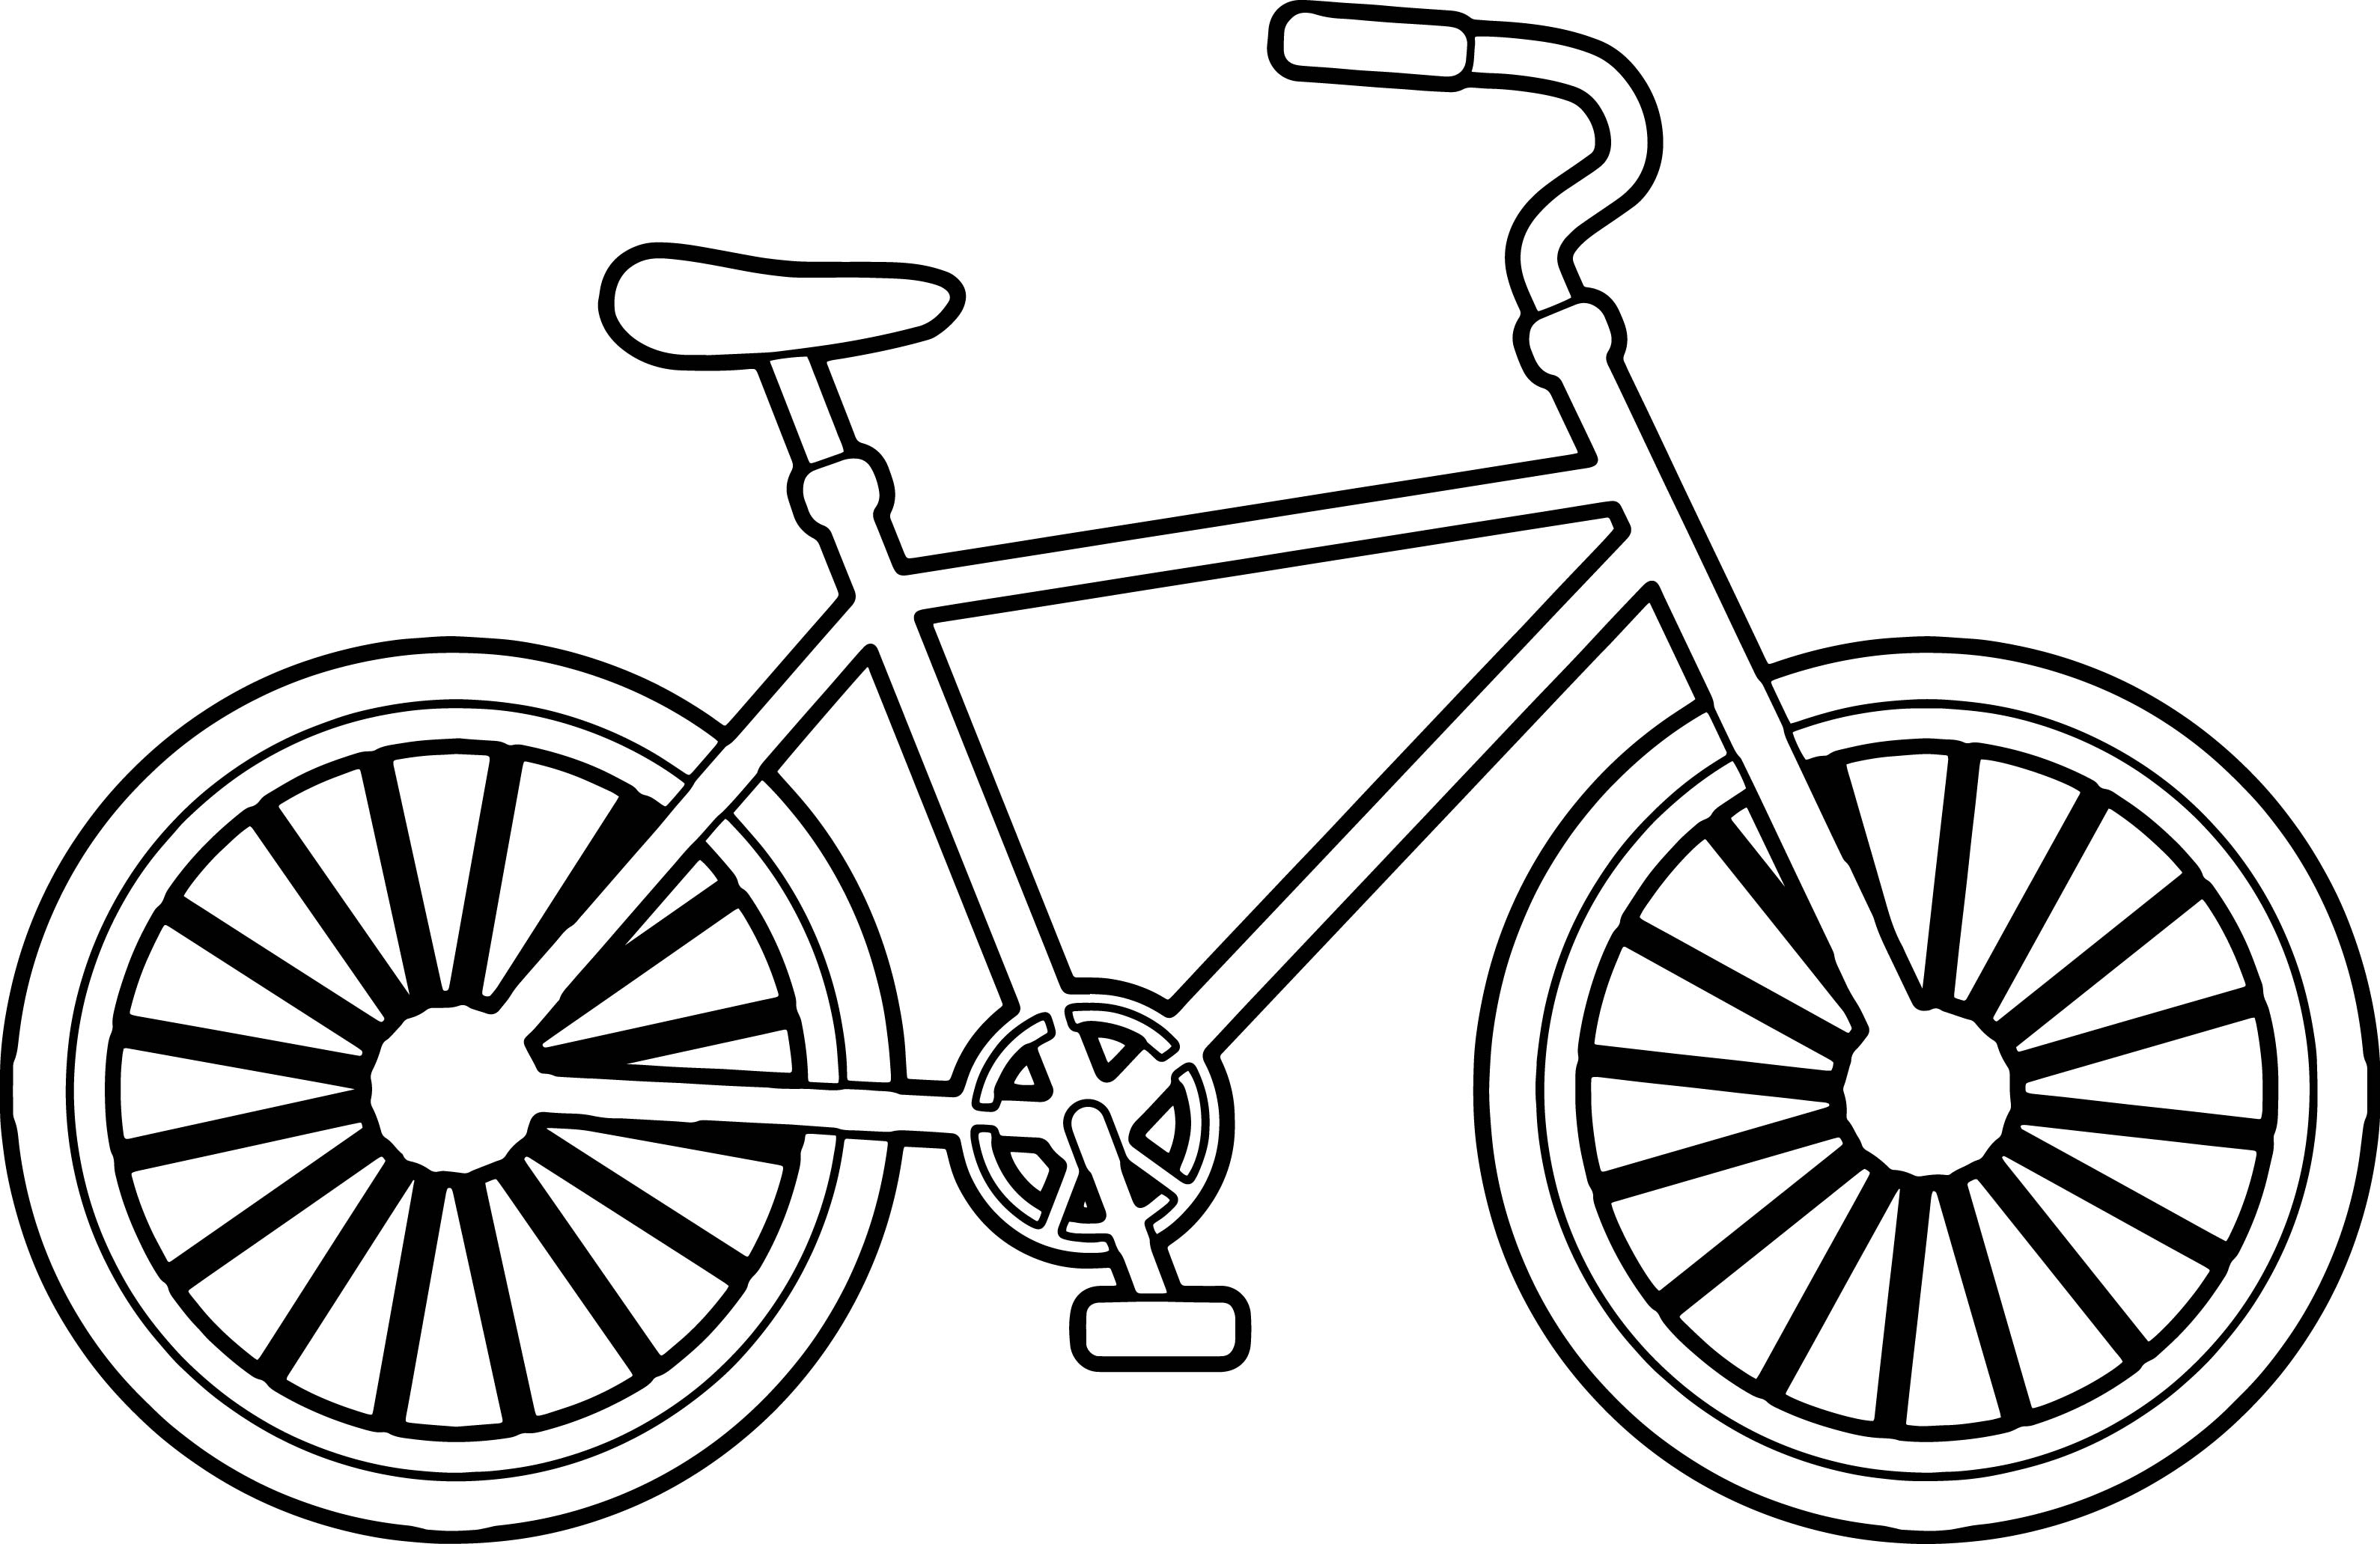 Hình vẽ xe đạp tô màu là cách tuyệt vời để thư giãn và tăng cường sự tập trung. Hãy tận hưởng khoảnh khắc tuyệt vời này và tô màu cho hình vẽ xe đạp của bạn.